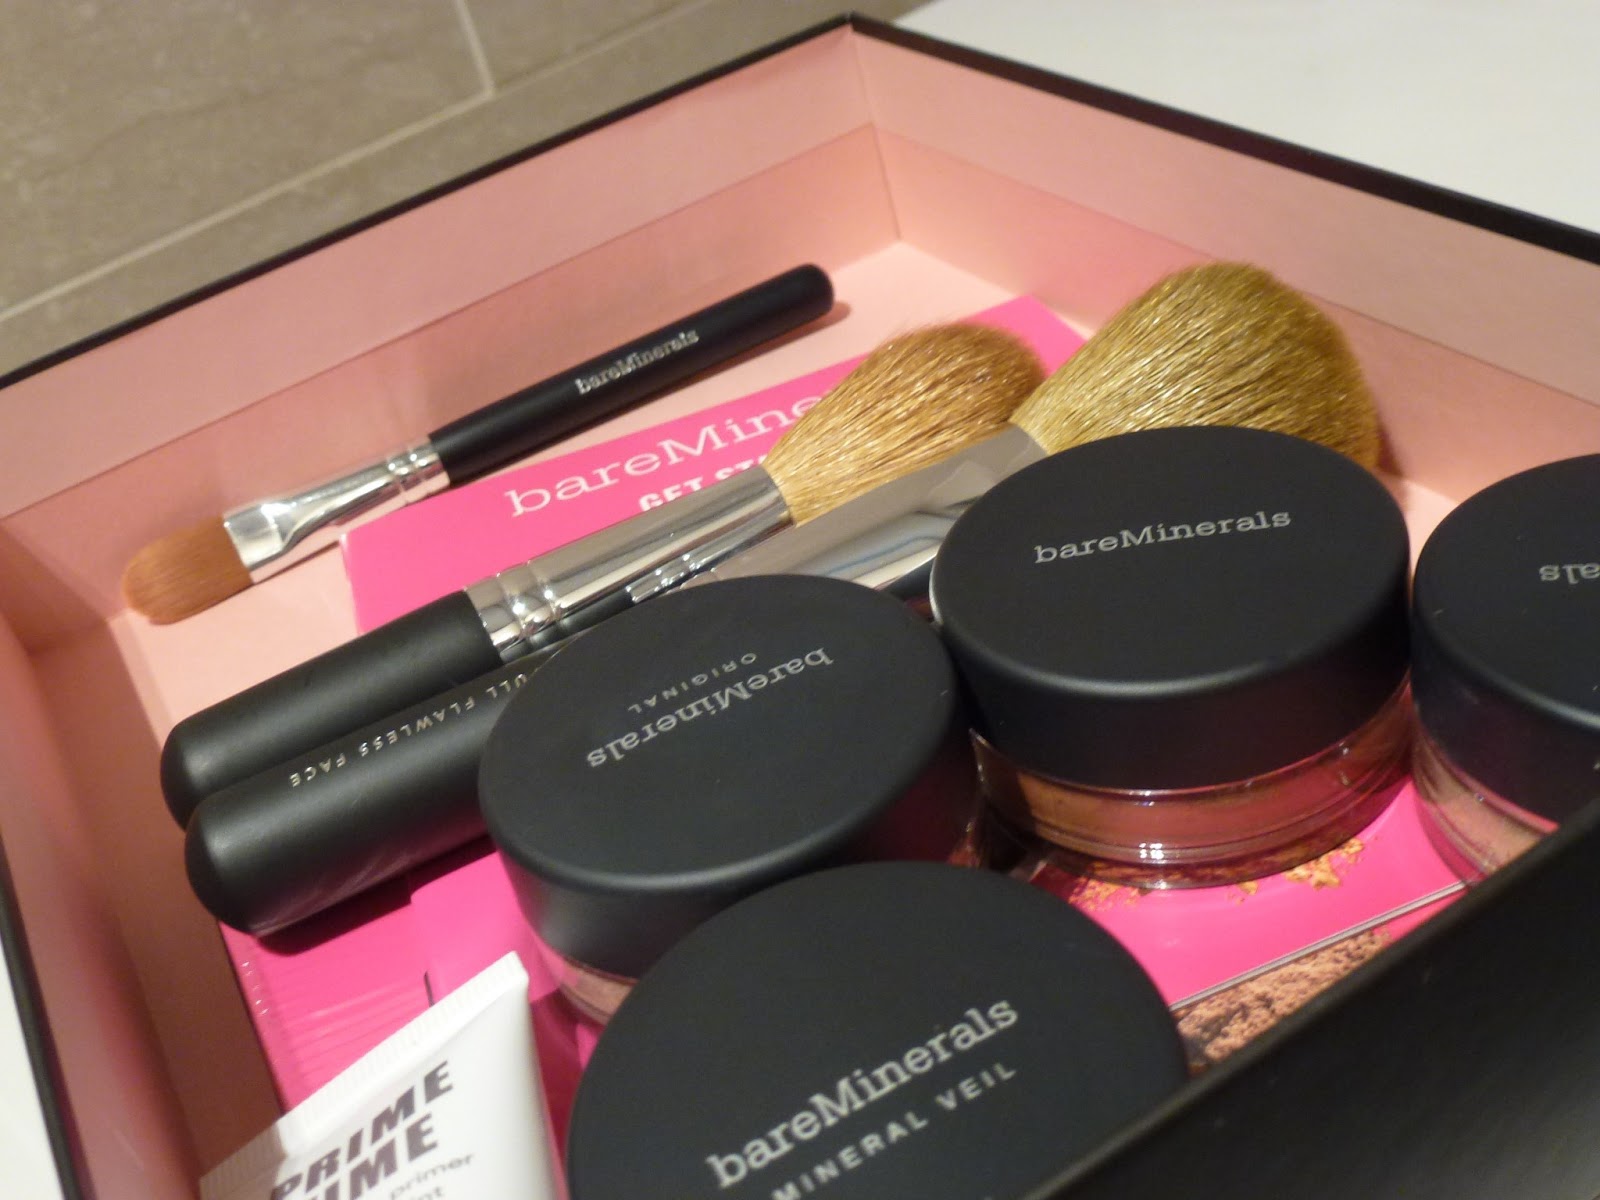 Kit bare essentials makeup nelson shop online